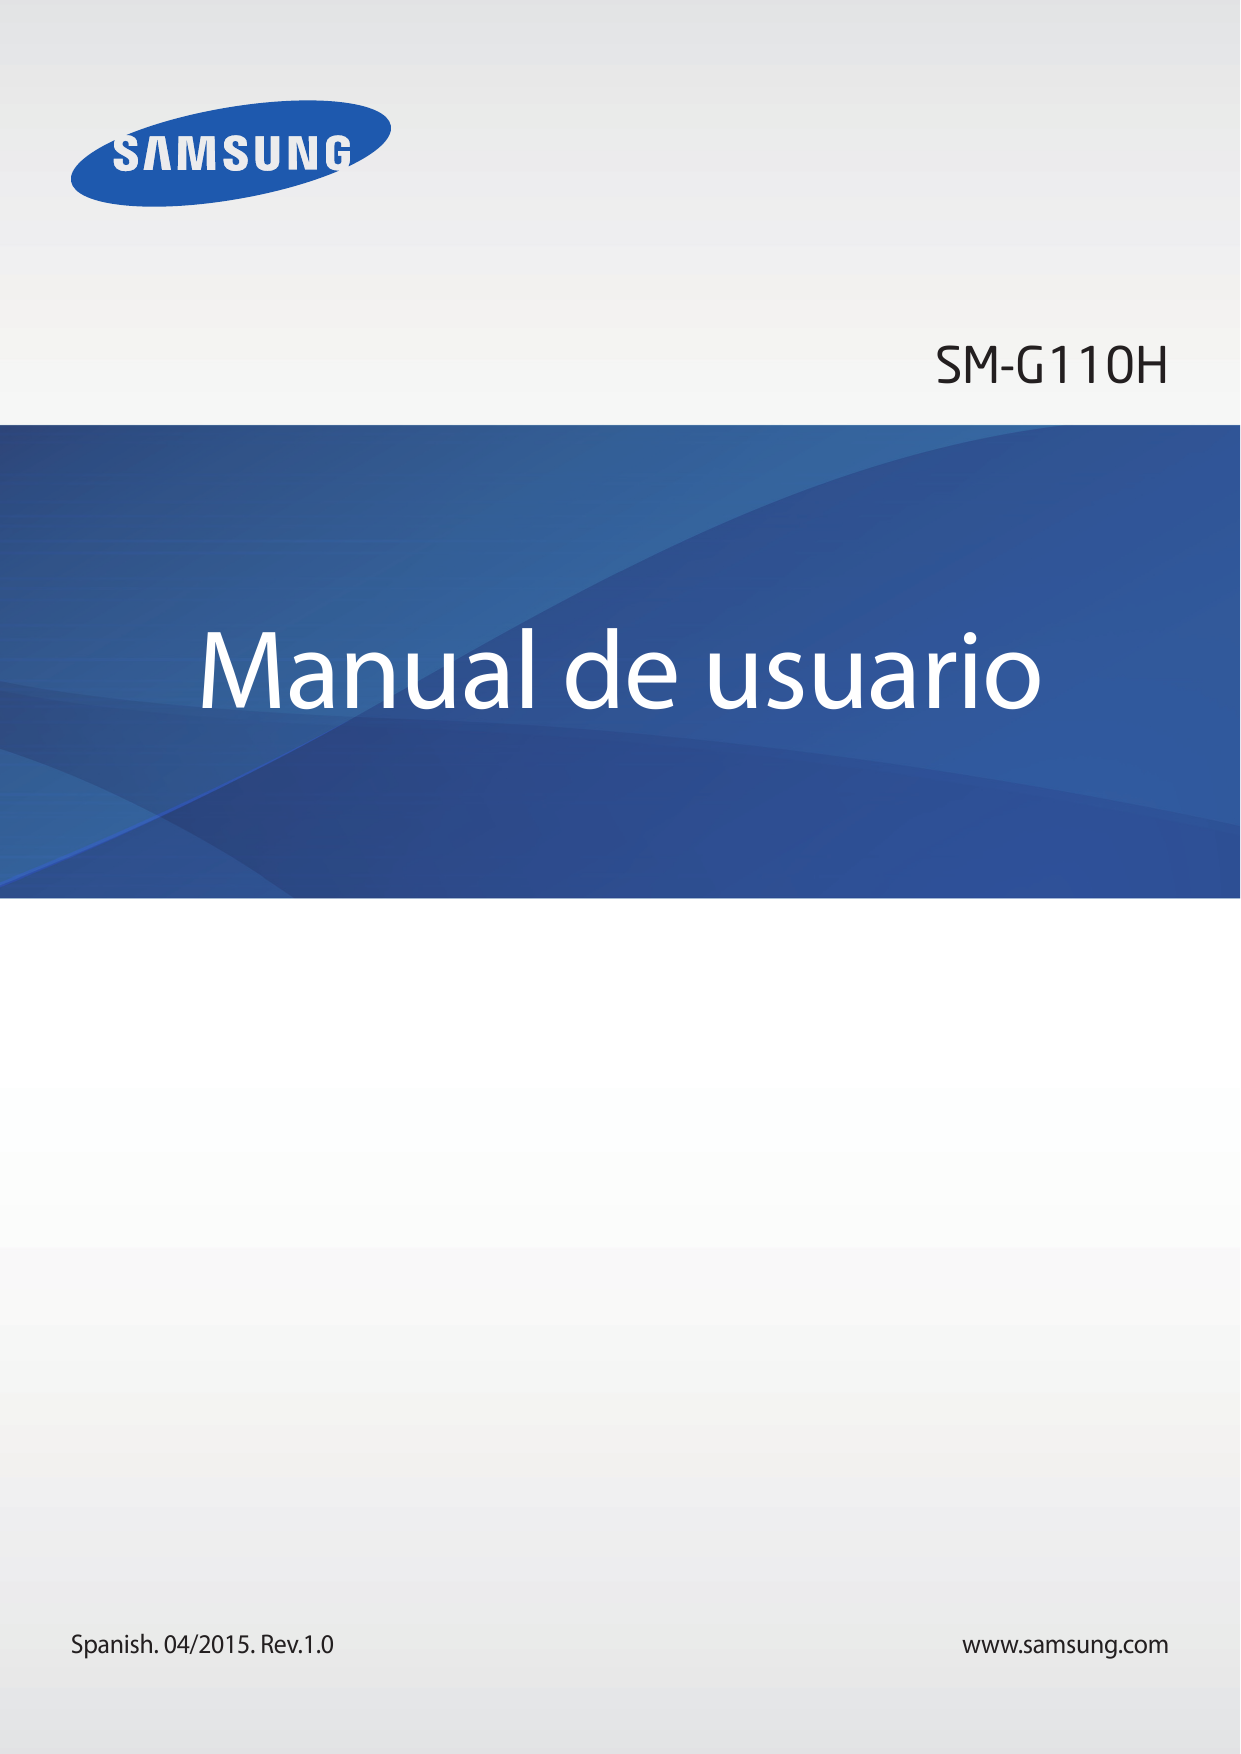 SM-G110HManual de usuarioSpanish. 04/2015. Rev.1.0www.samsung.com